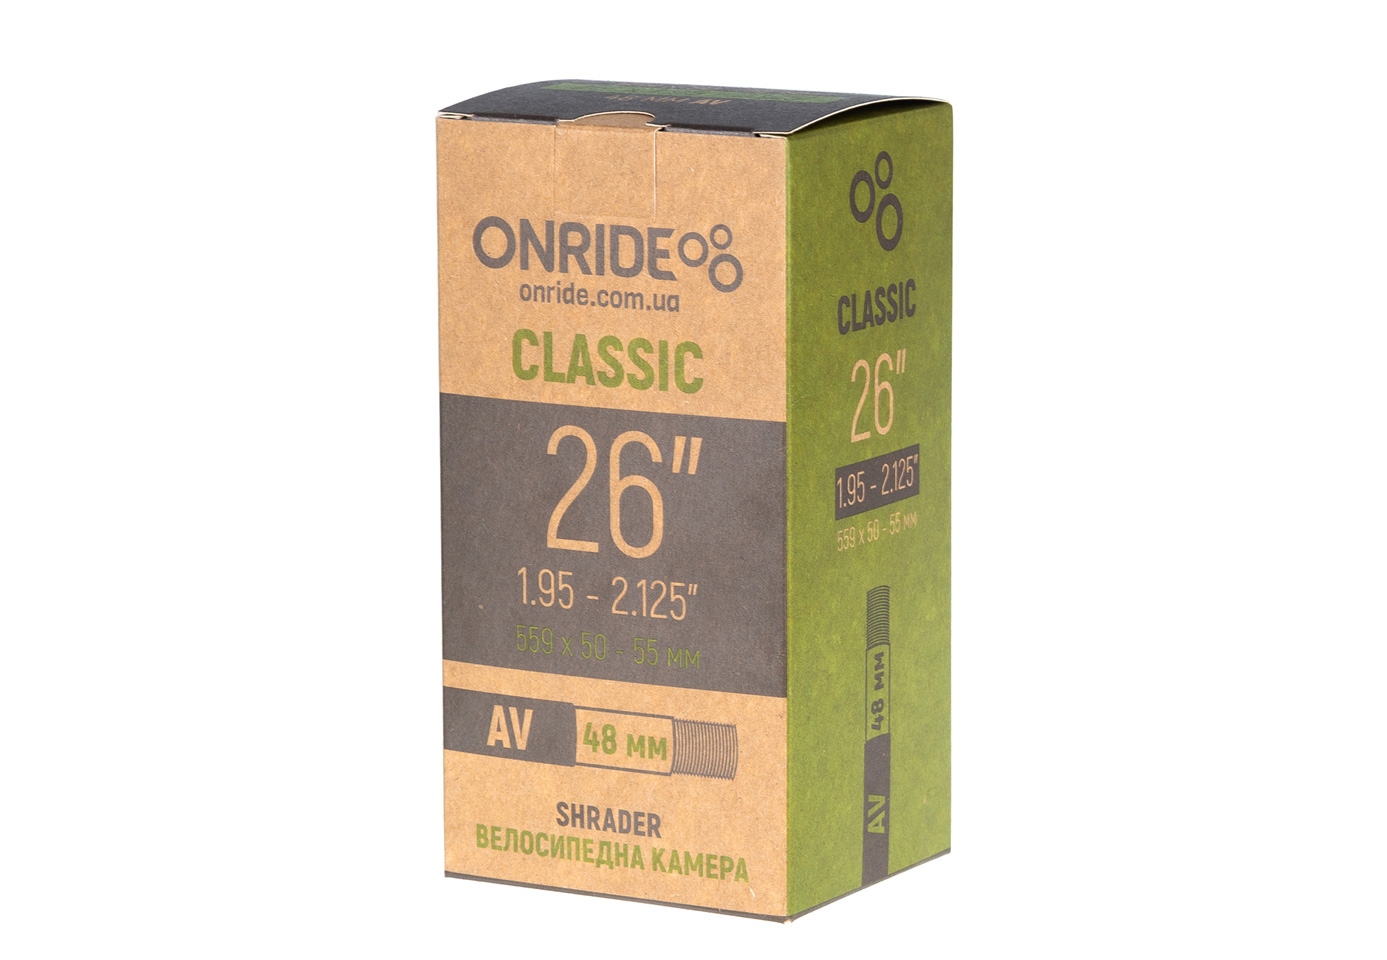 ONRIDE Classic 26"x1.95-2.125" AV 48